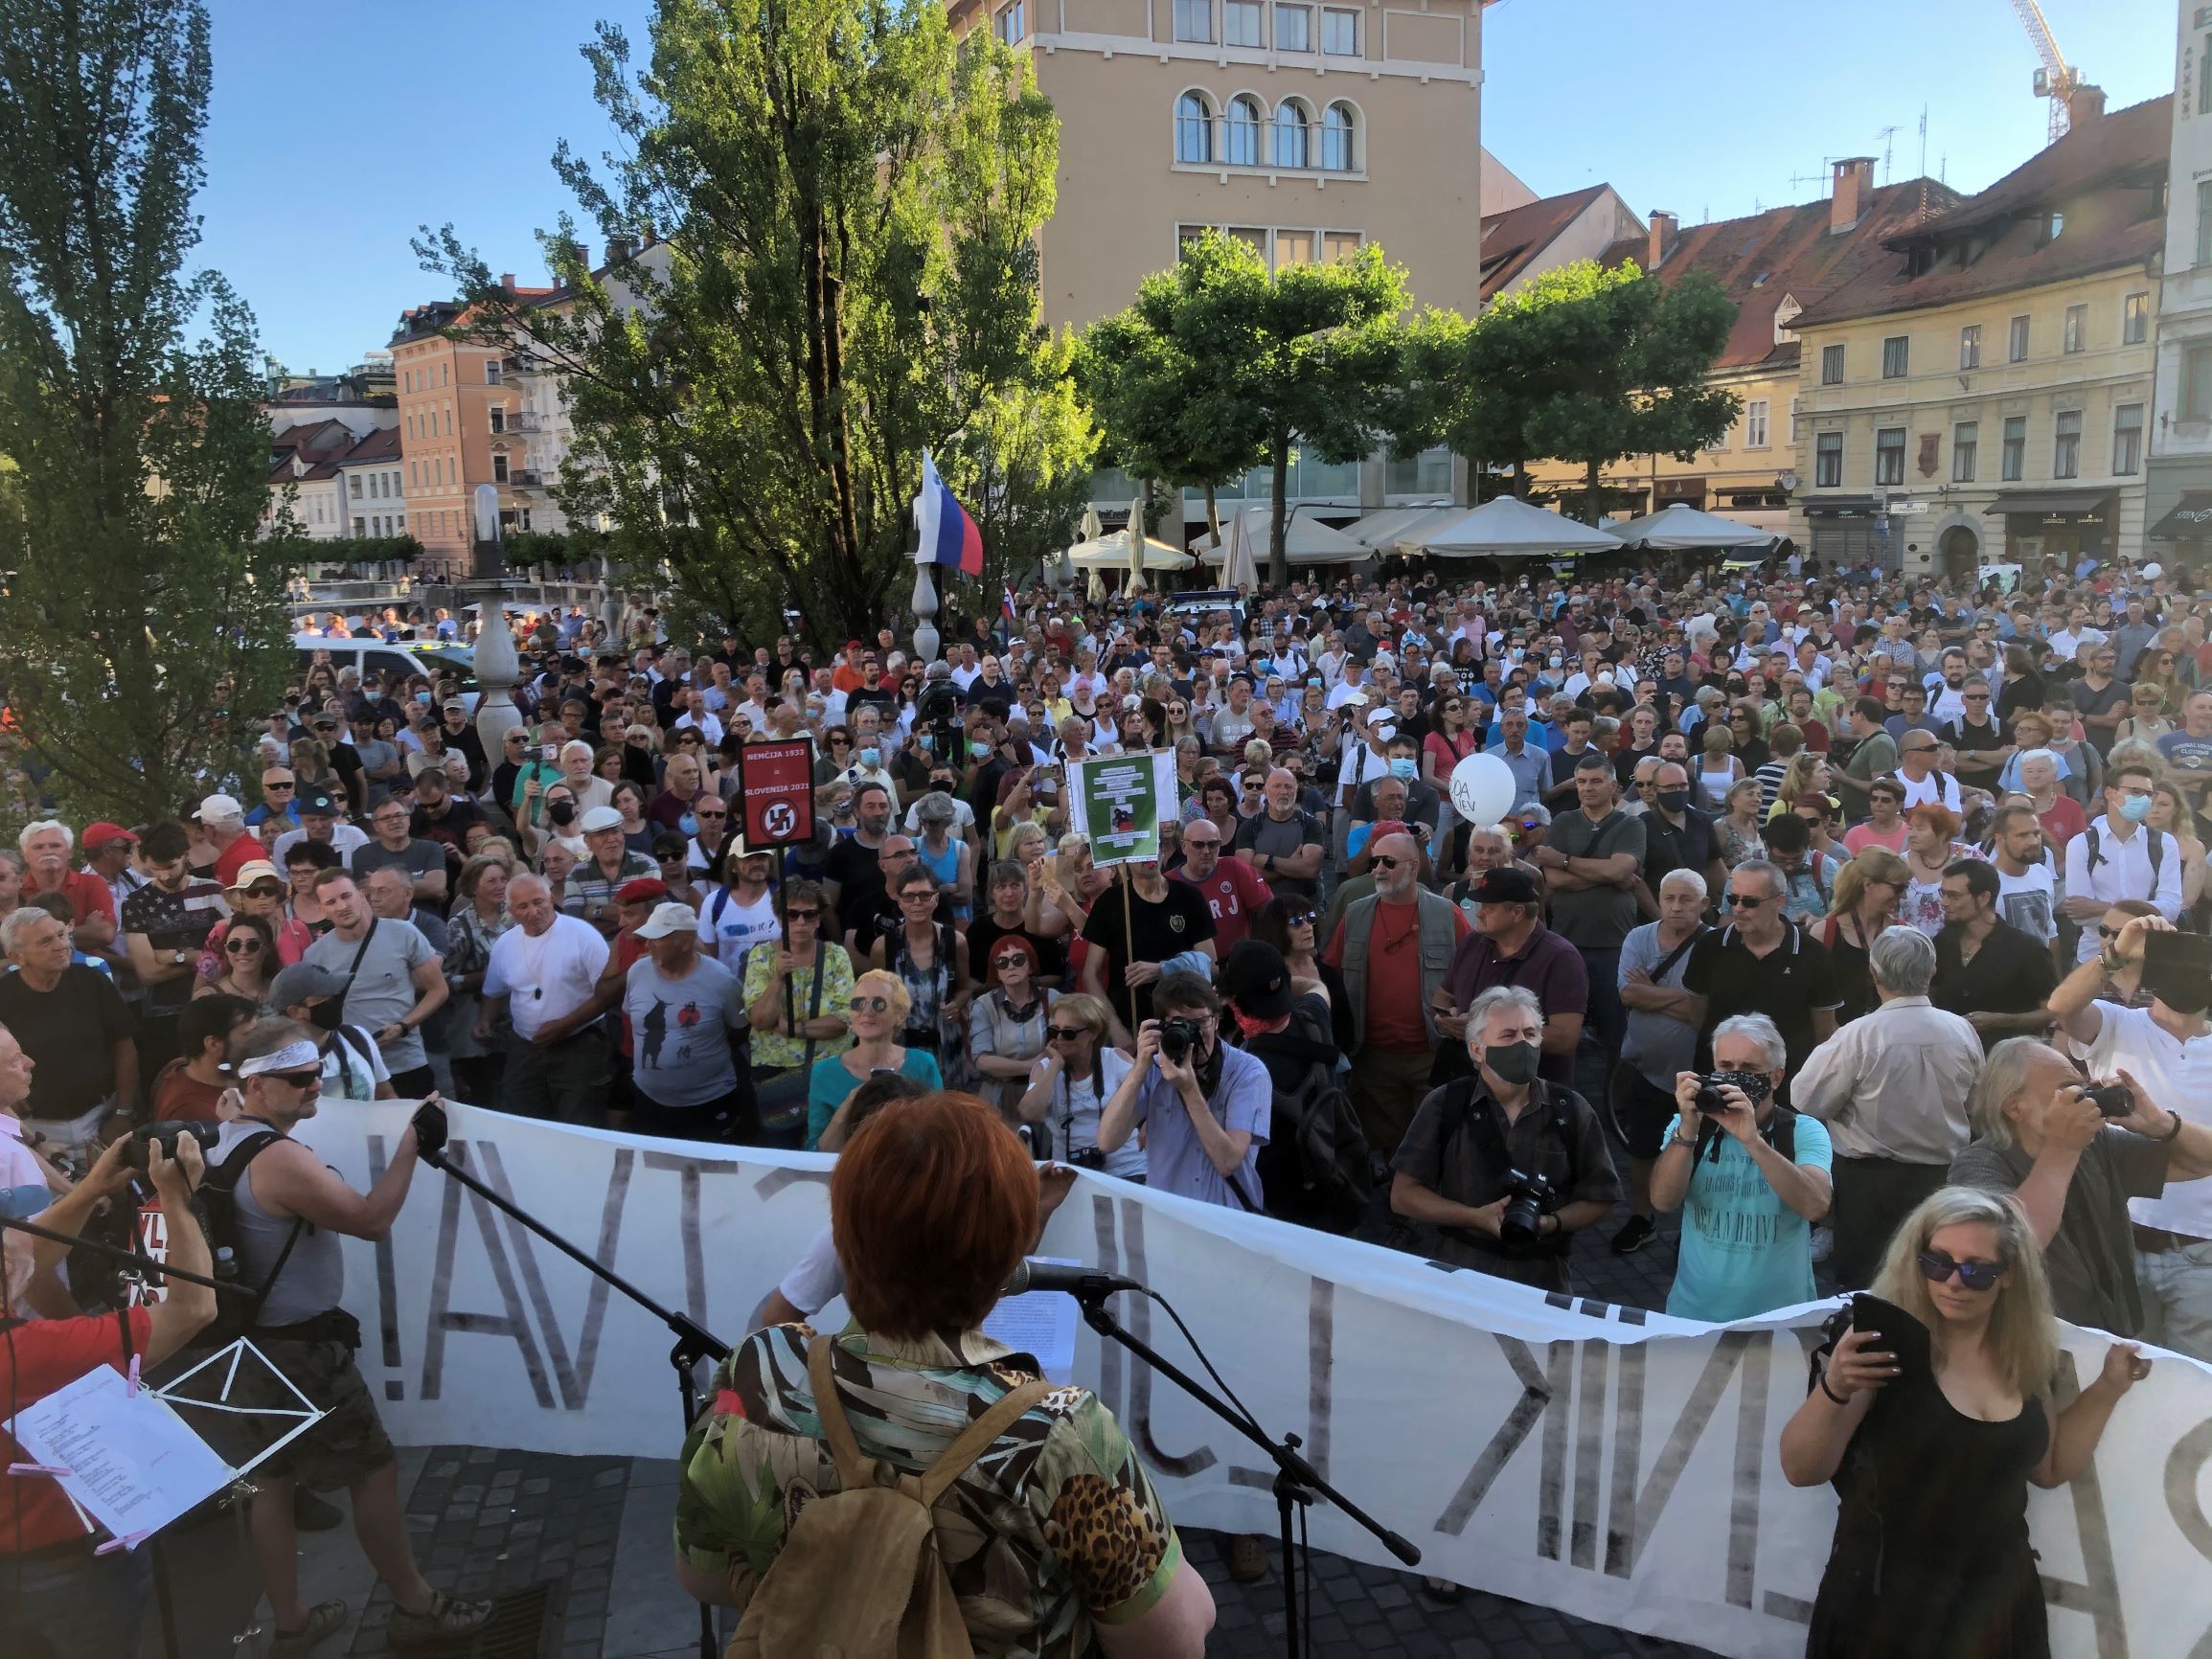 (V ŽIVO) Na dan državnosti v Ljubljani ograje in okoli 500 policistov, ki bodo varovali osrednjo državno proslavo na Trgu republike – Objavljen scenosled današnje alternativne protestne proslave na Prešernovem trgu